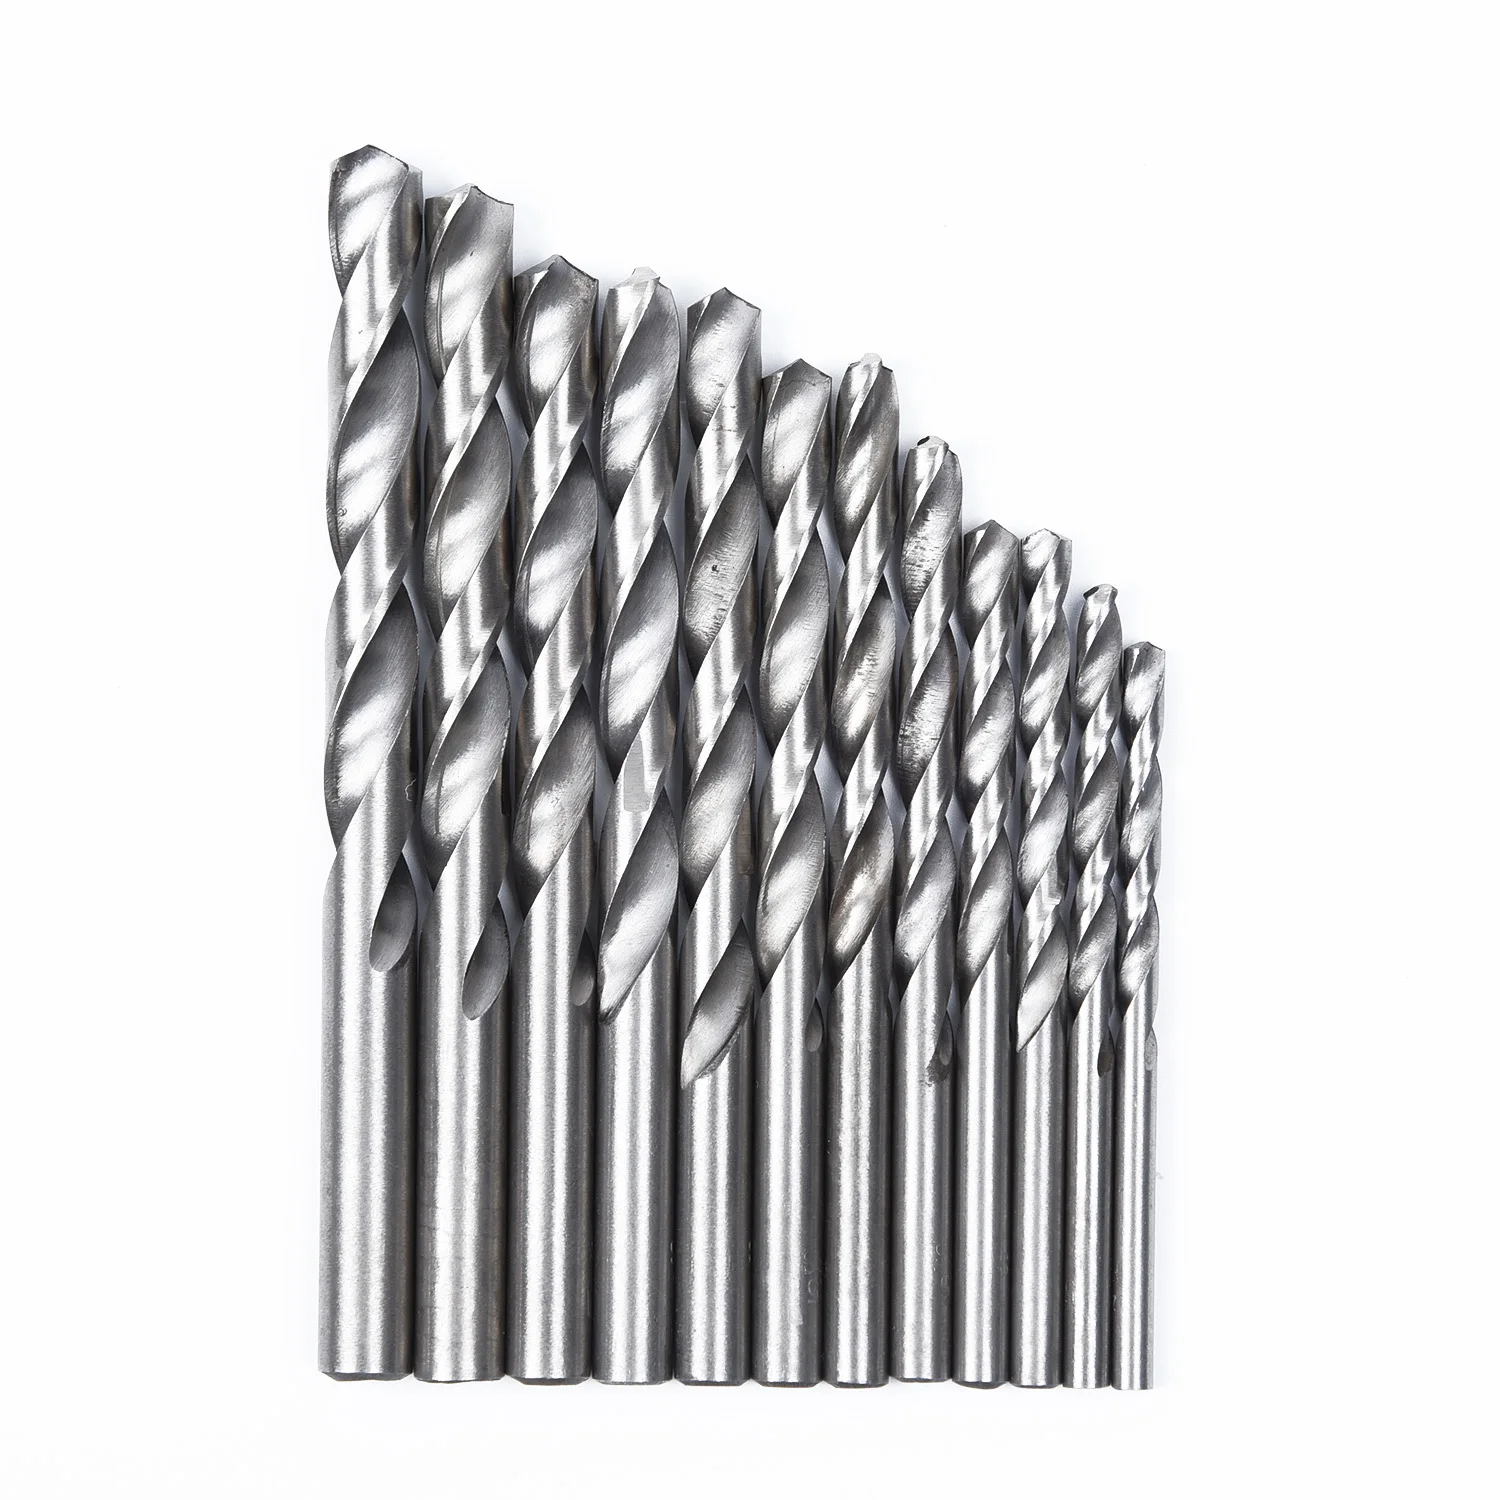 19 шт HSS высокоскоростная стальная Алмазная буровая коронка набор с покрытием Twist 1,5 мм-10 мм